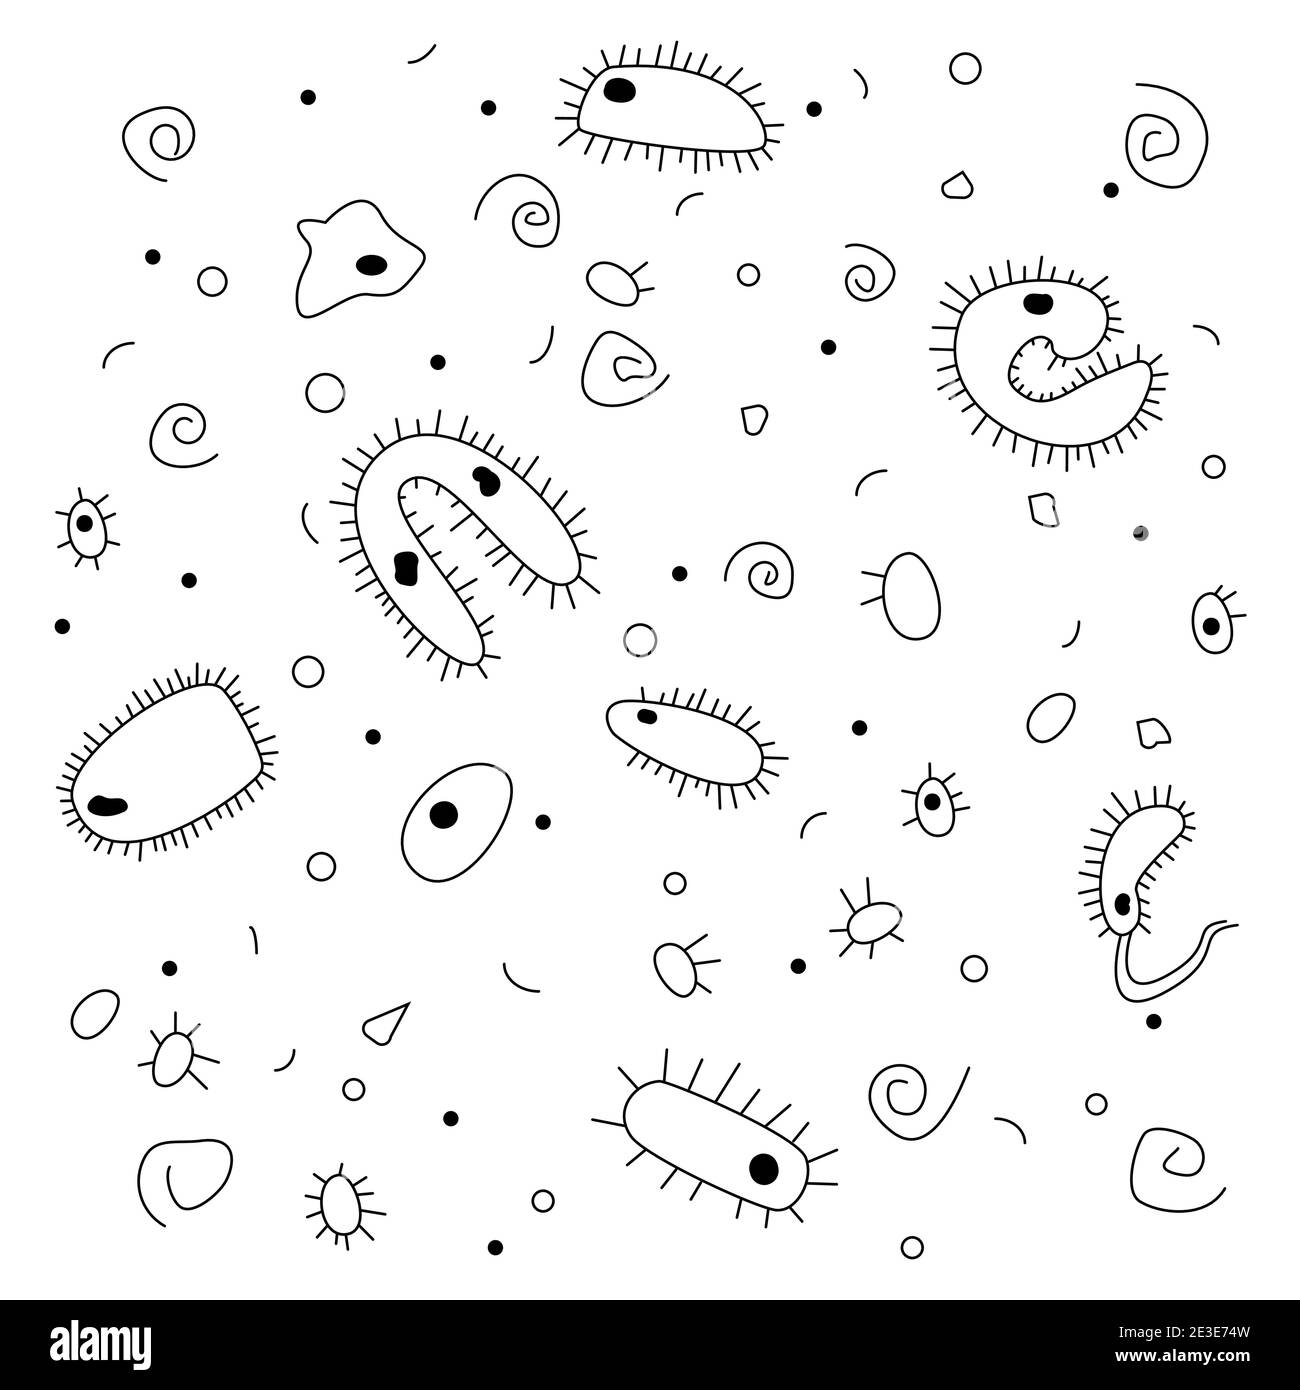 Doodle-Stil, handgezeichnete Zeichnung. Schwarze und weiße Bakterien auf weißem Hintergrund. Blick unter das Mikroskop. Stock Vektor